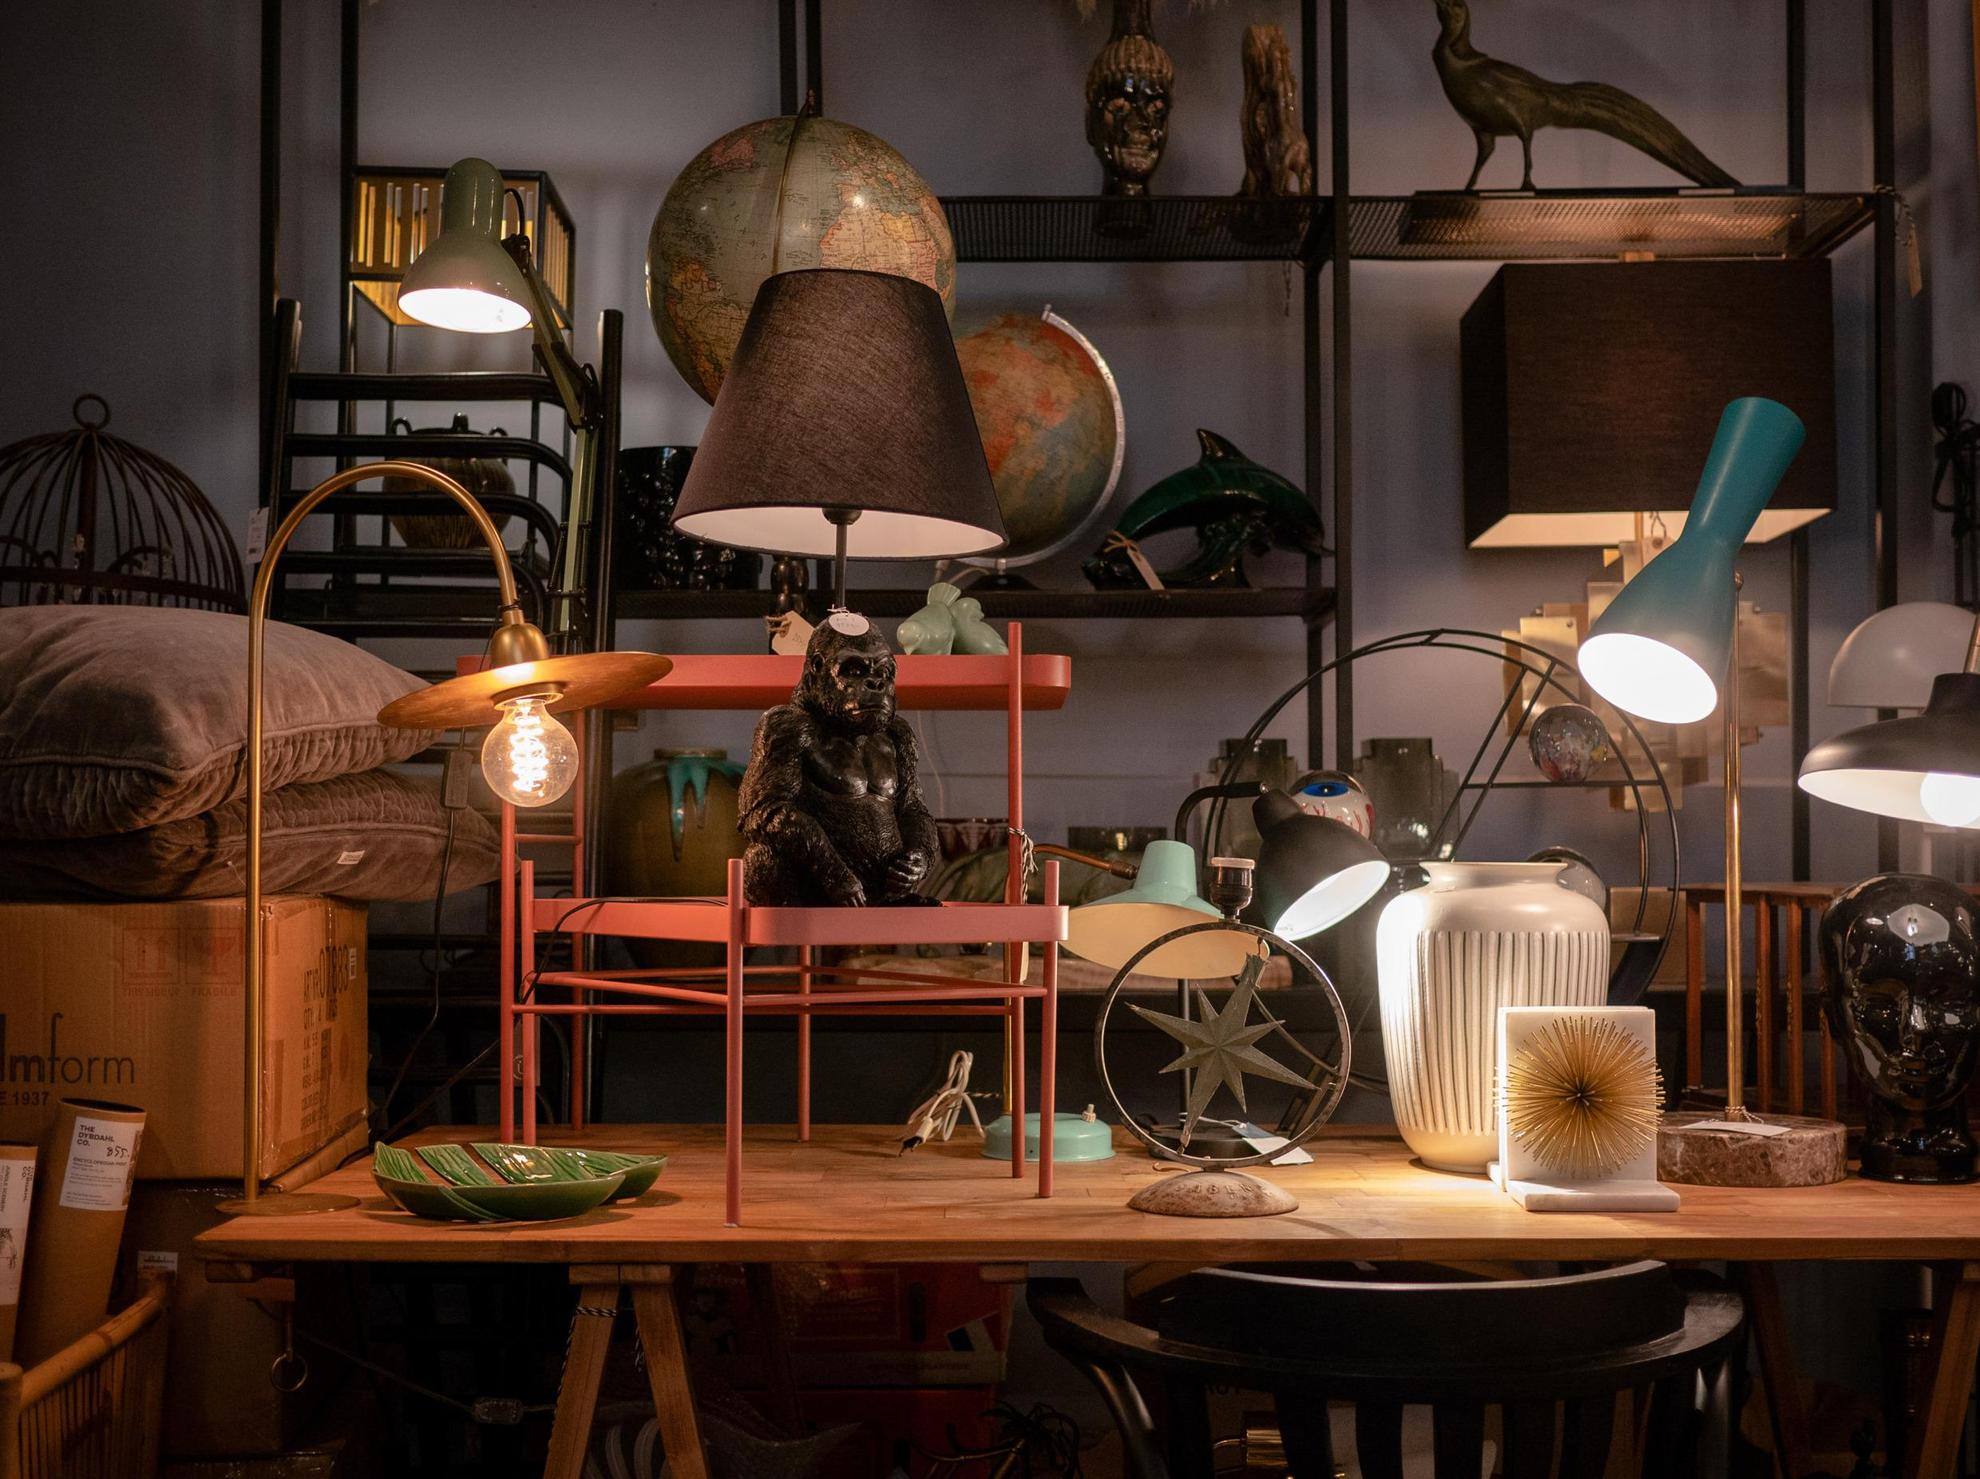 Ausstellung verschiedener Designartikel in einem Antiquitätengeschäft. Verschiedene Lampen, Möbel und Dekorationen.